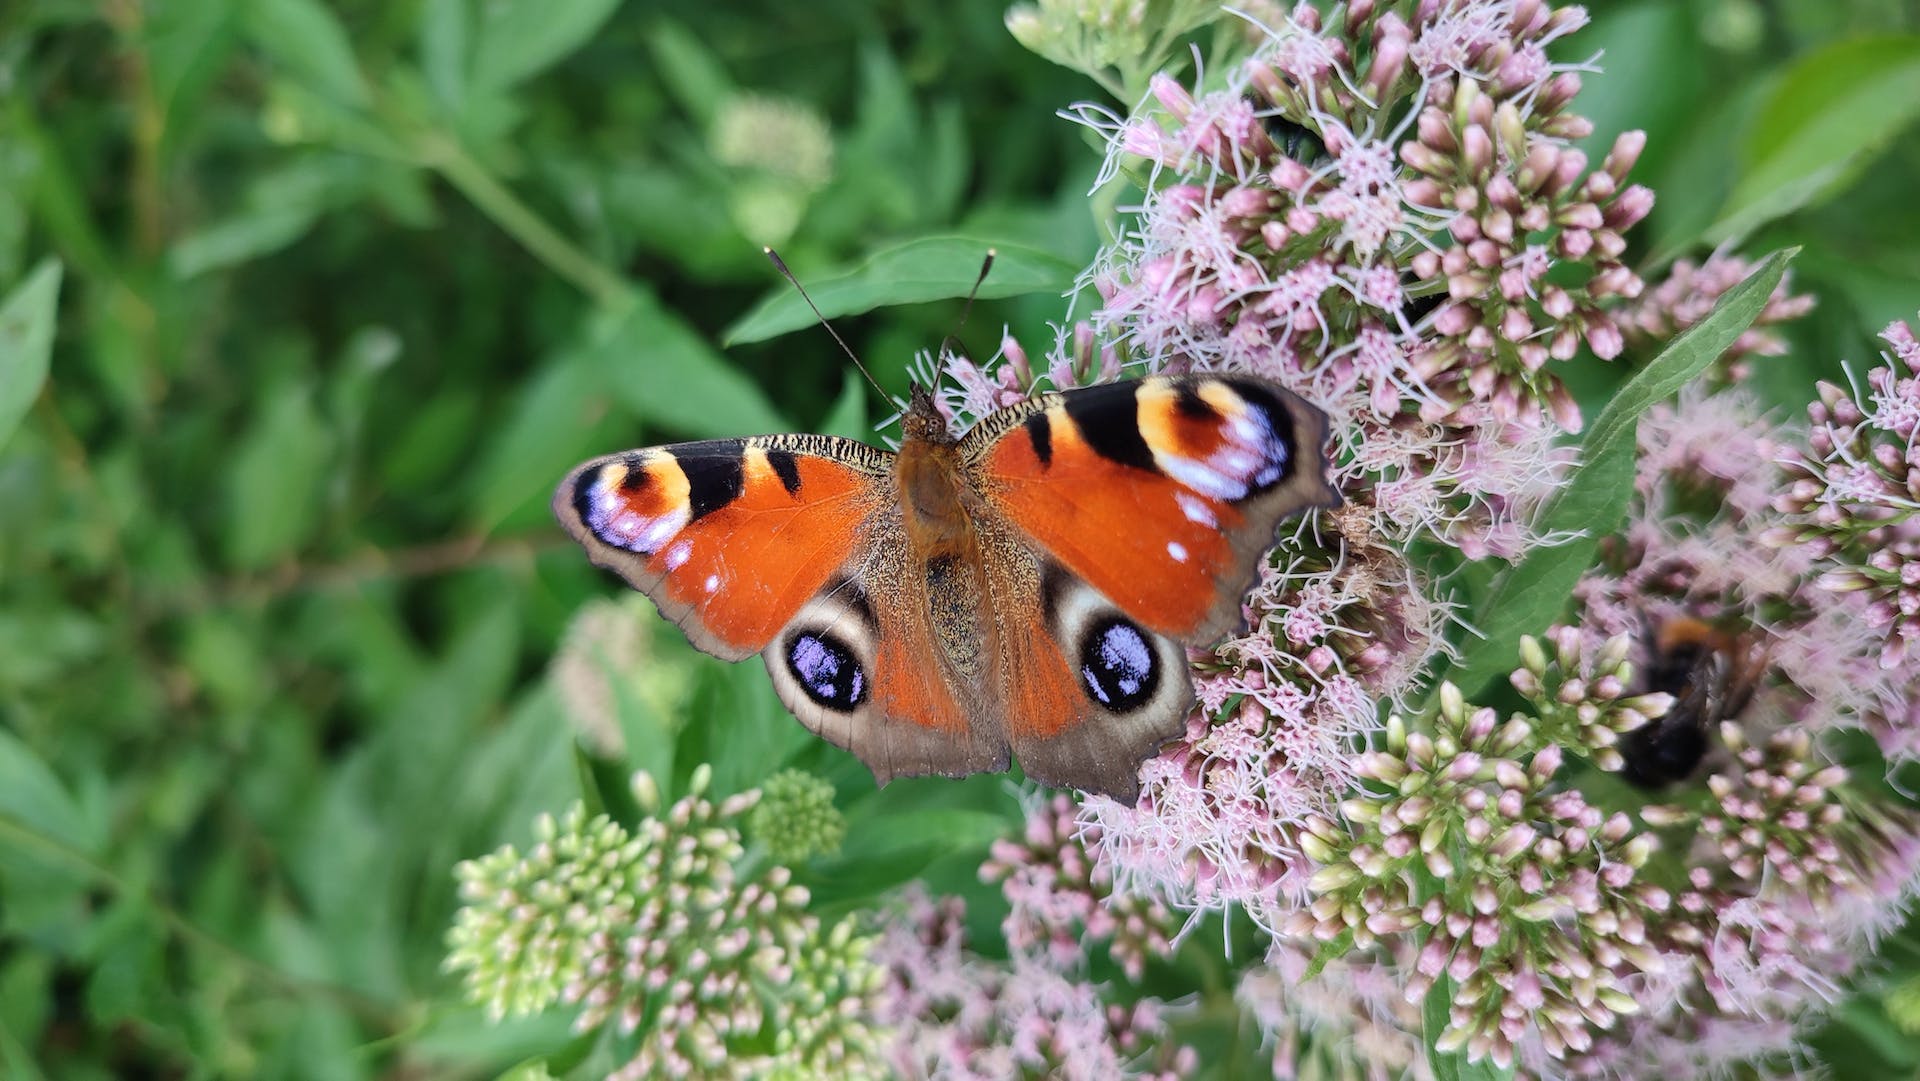 Photo by Mirko Bellmann: https://www.pexels.com/photo/a-peacock-butterfly-on-flower-in-close-up-shot-12925788/